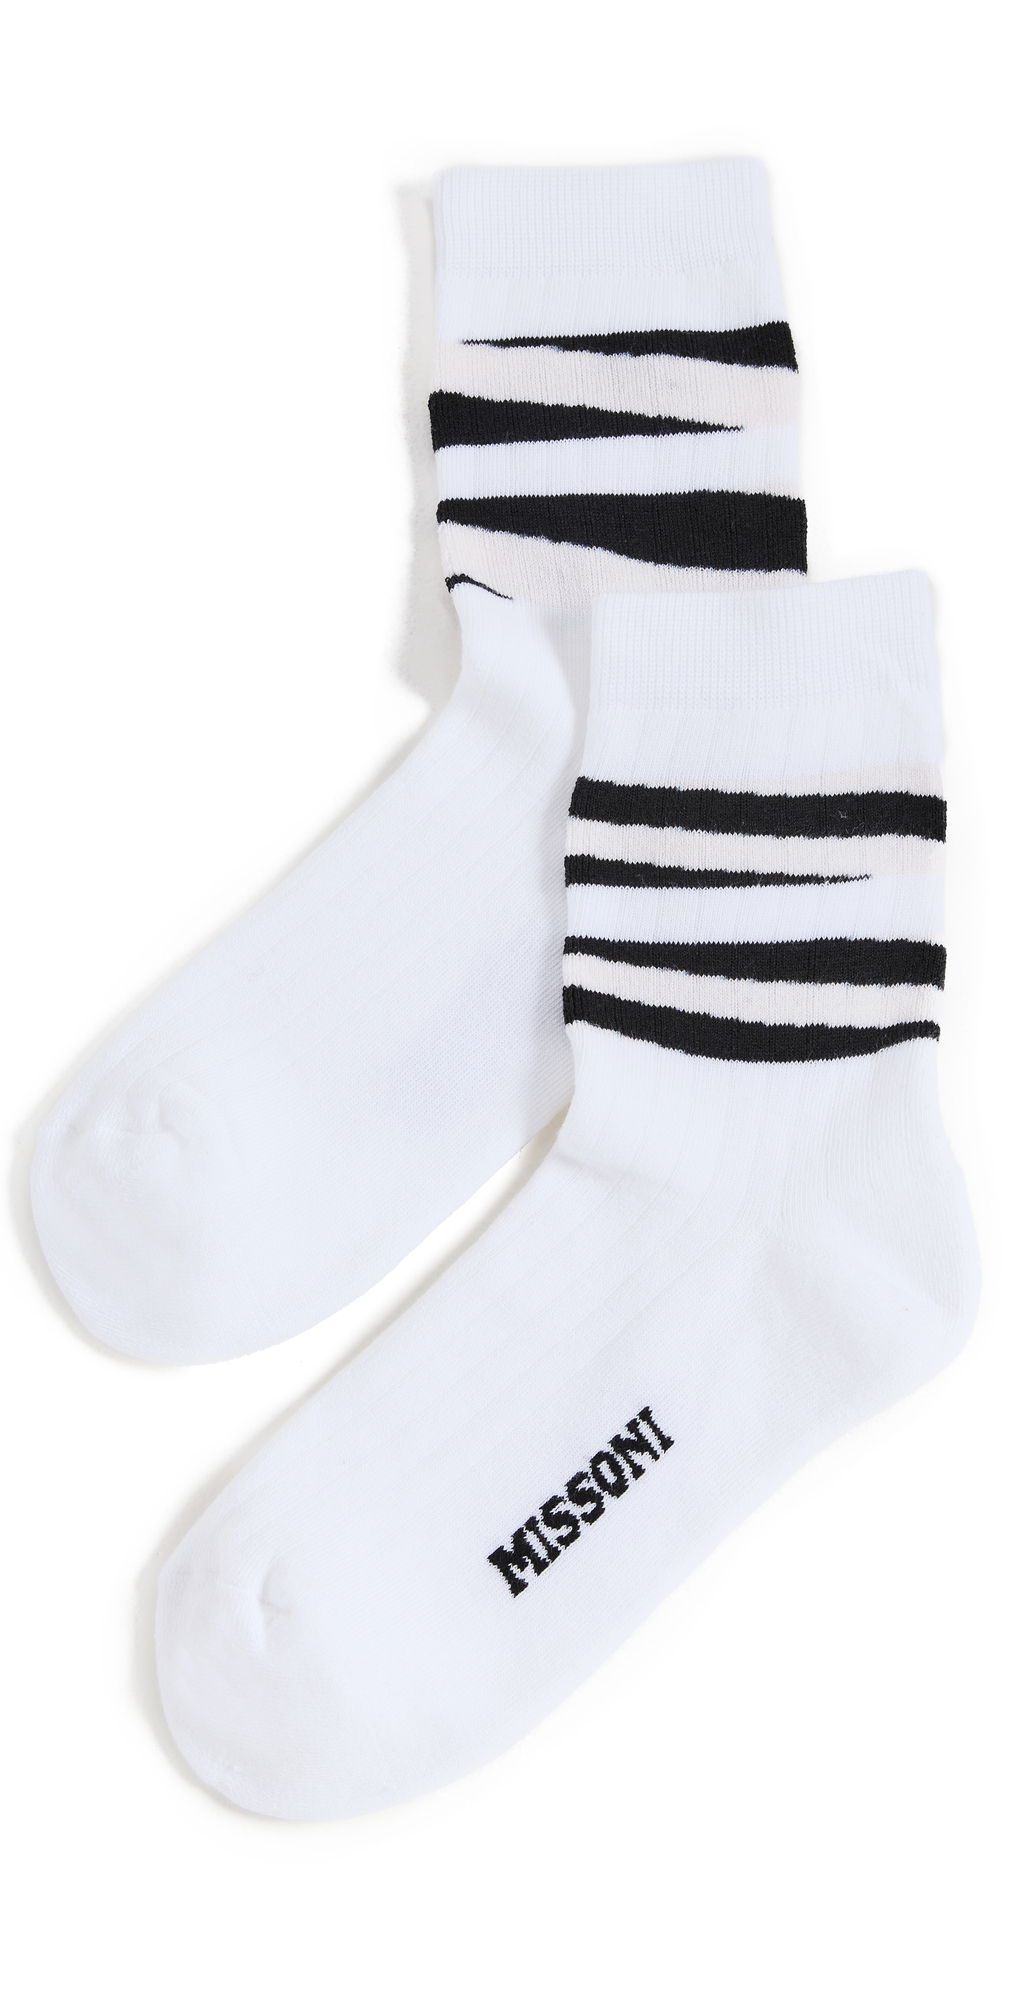 Missoni Short Socks in black / white